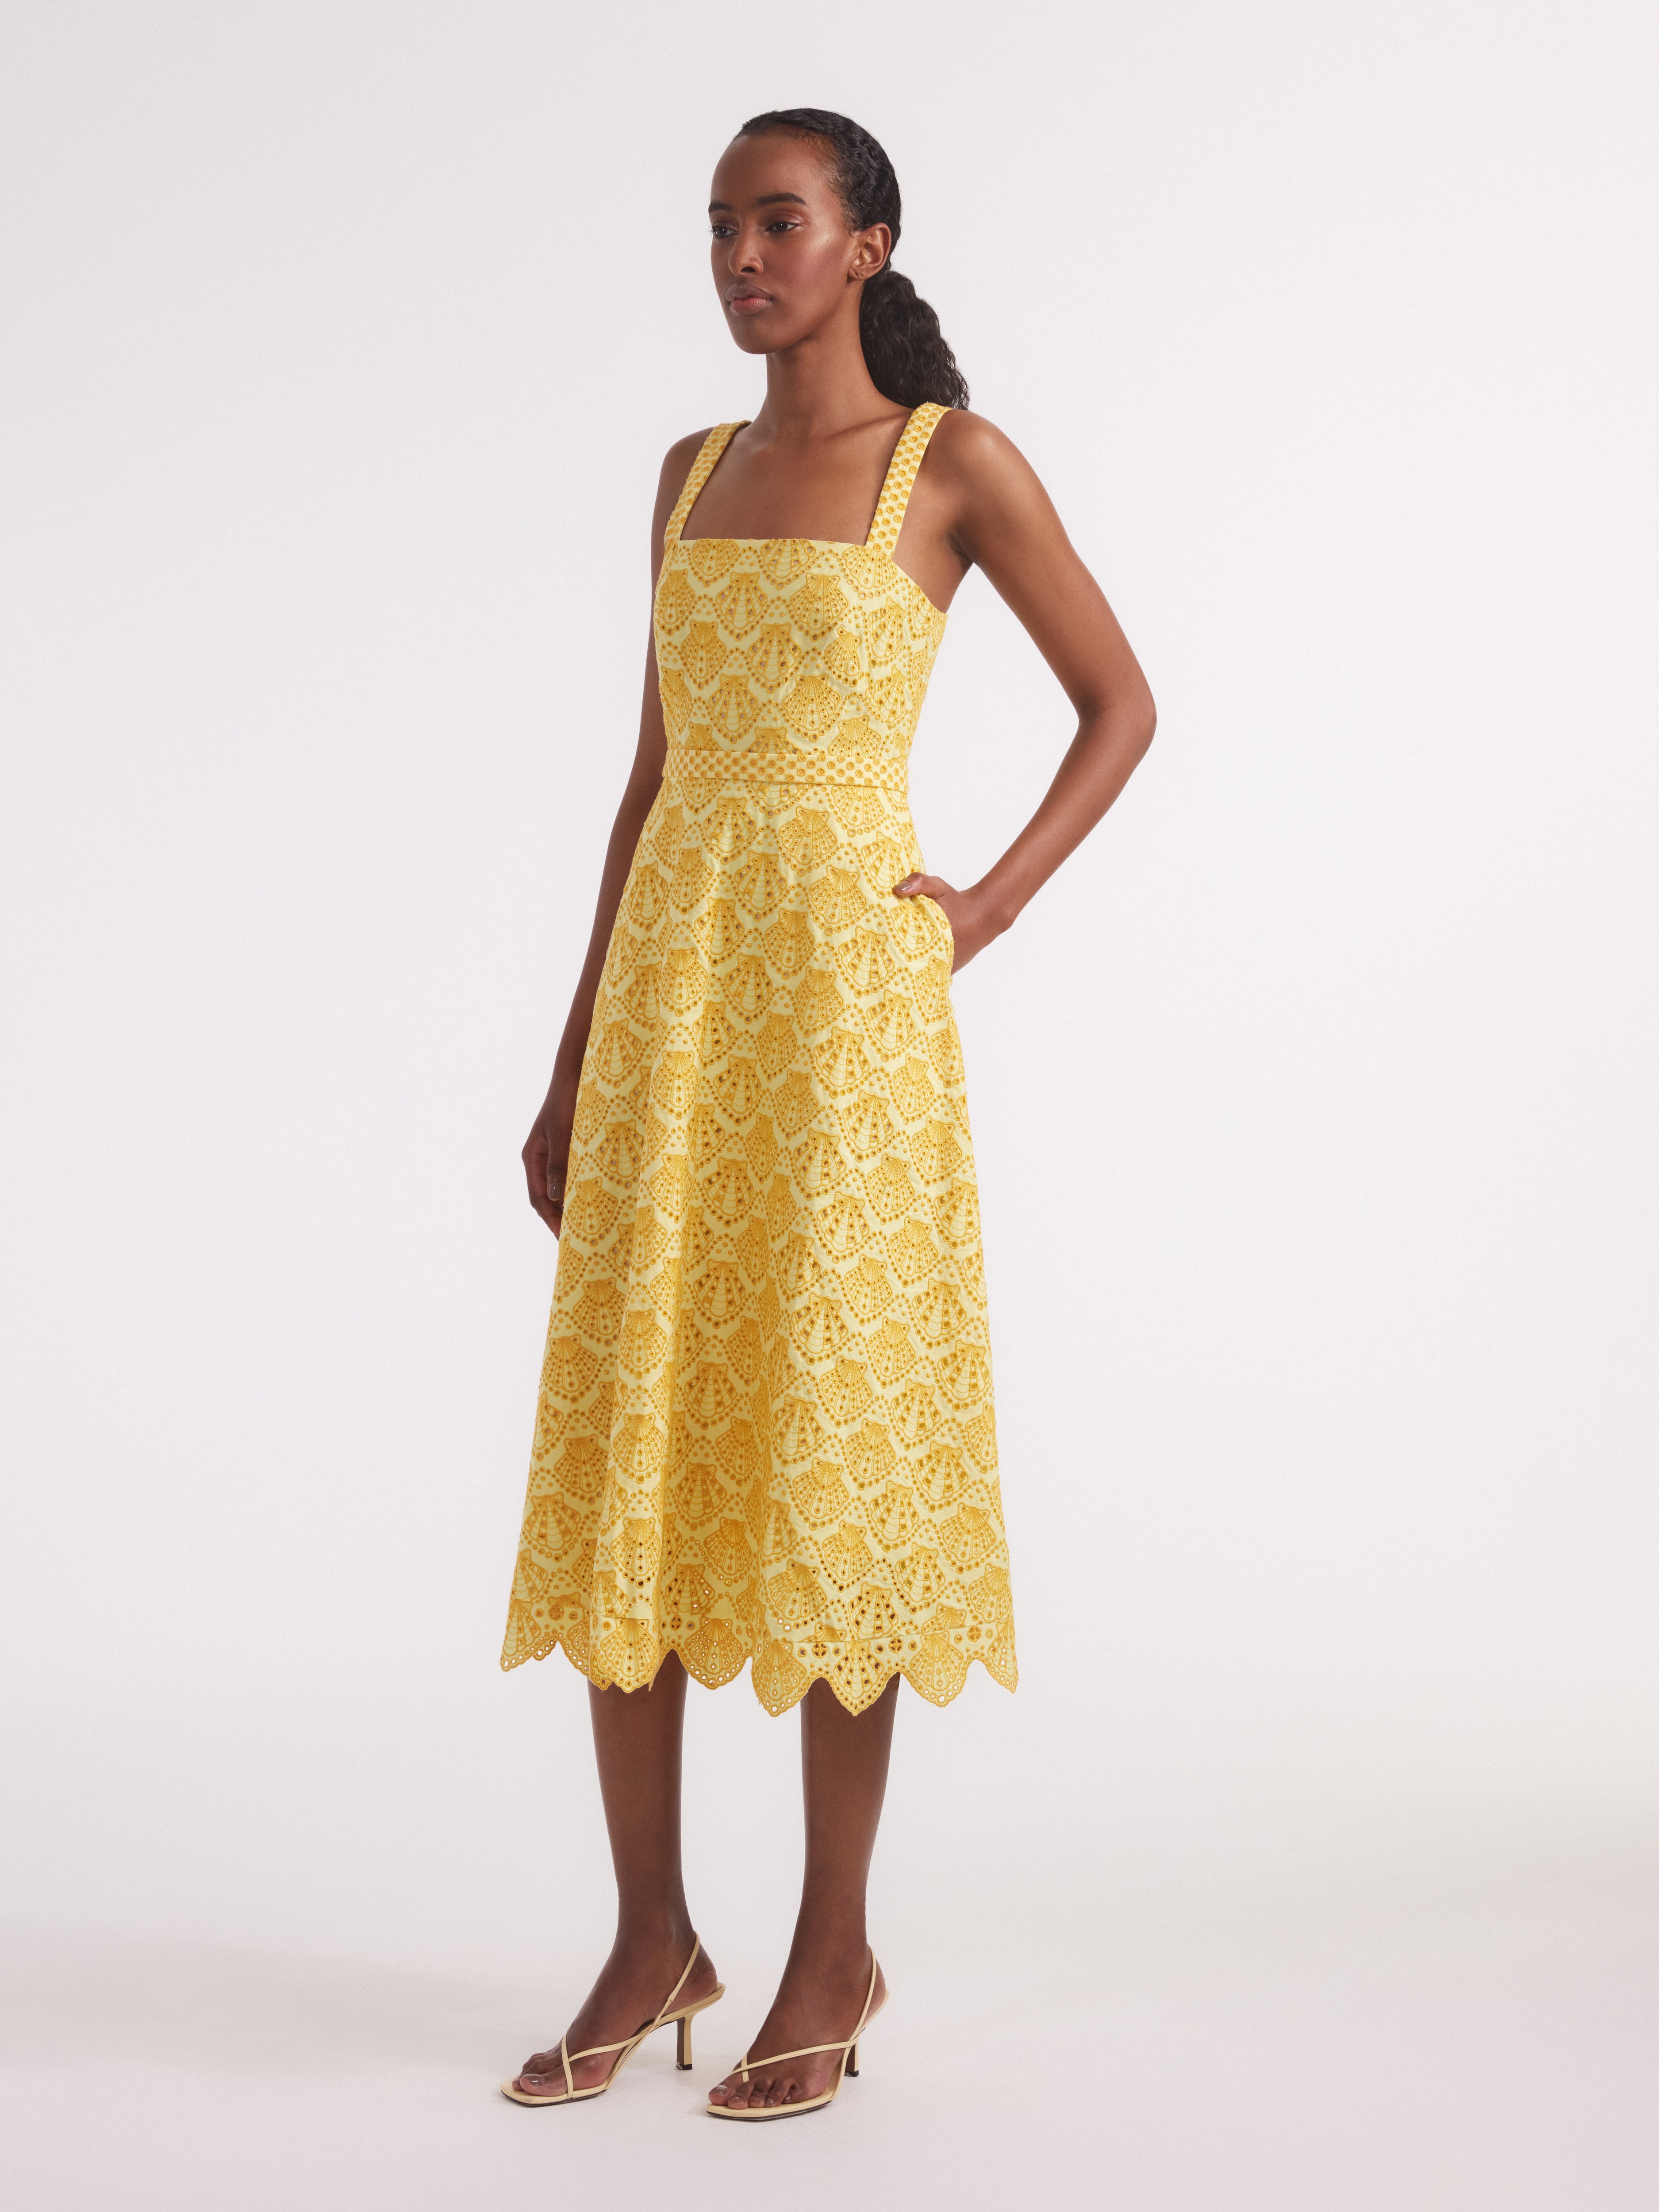 Aubrey Dress in Lemonade Yellow